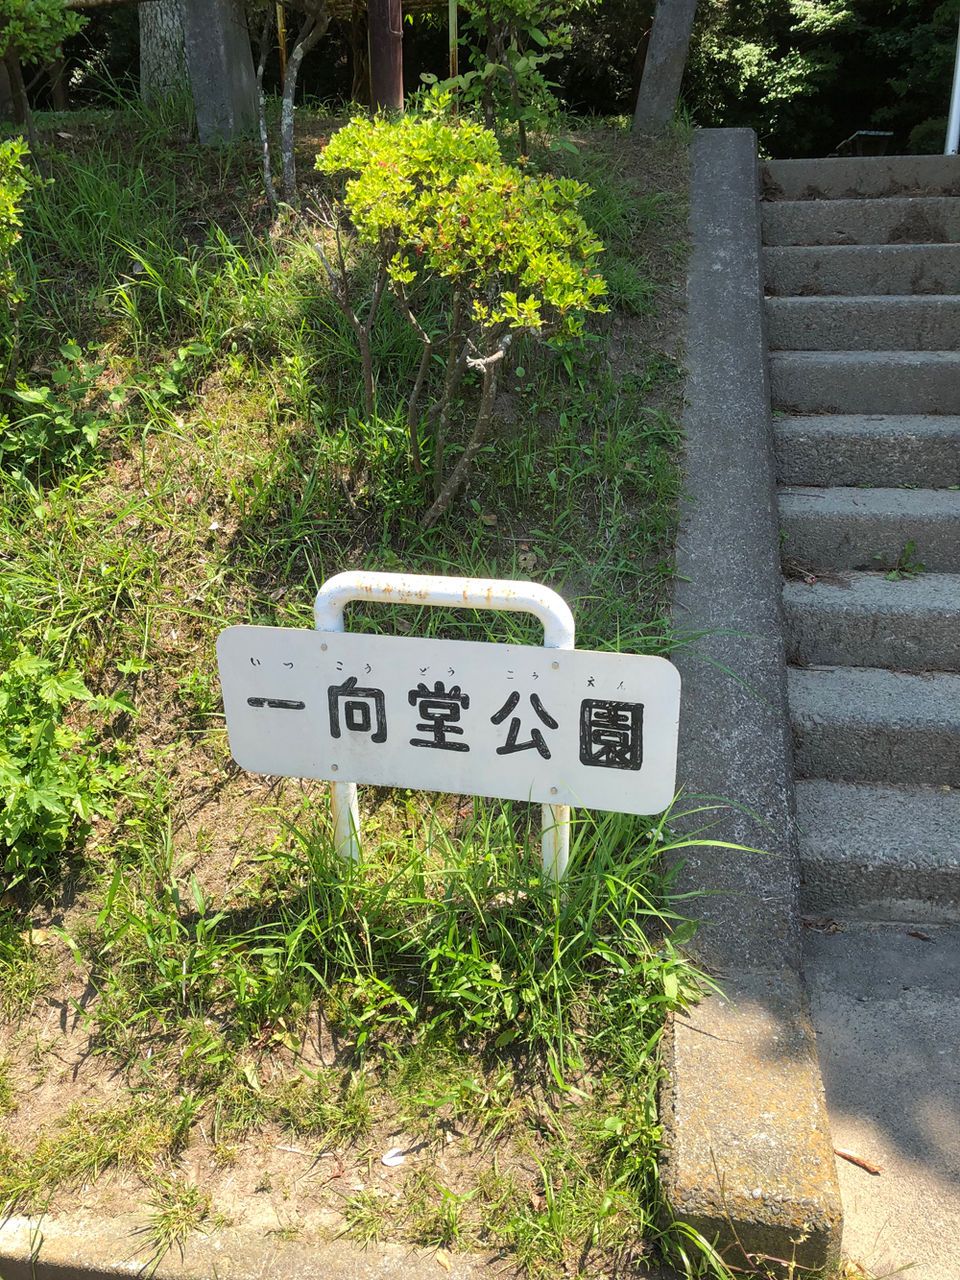 唯善上人草庵跡を訪ねて - 鎌倉・常盤「一向堂」 : 常敬寺ブログ